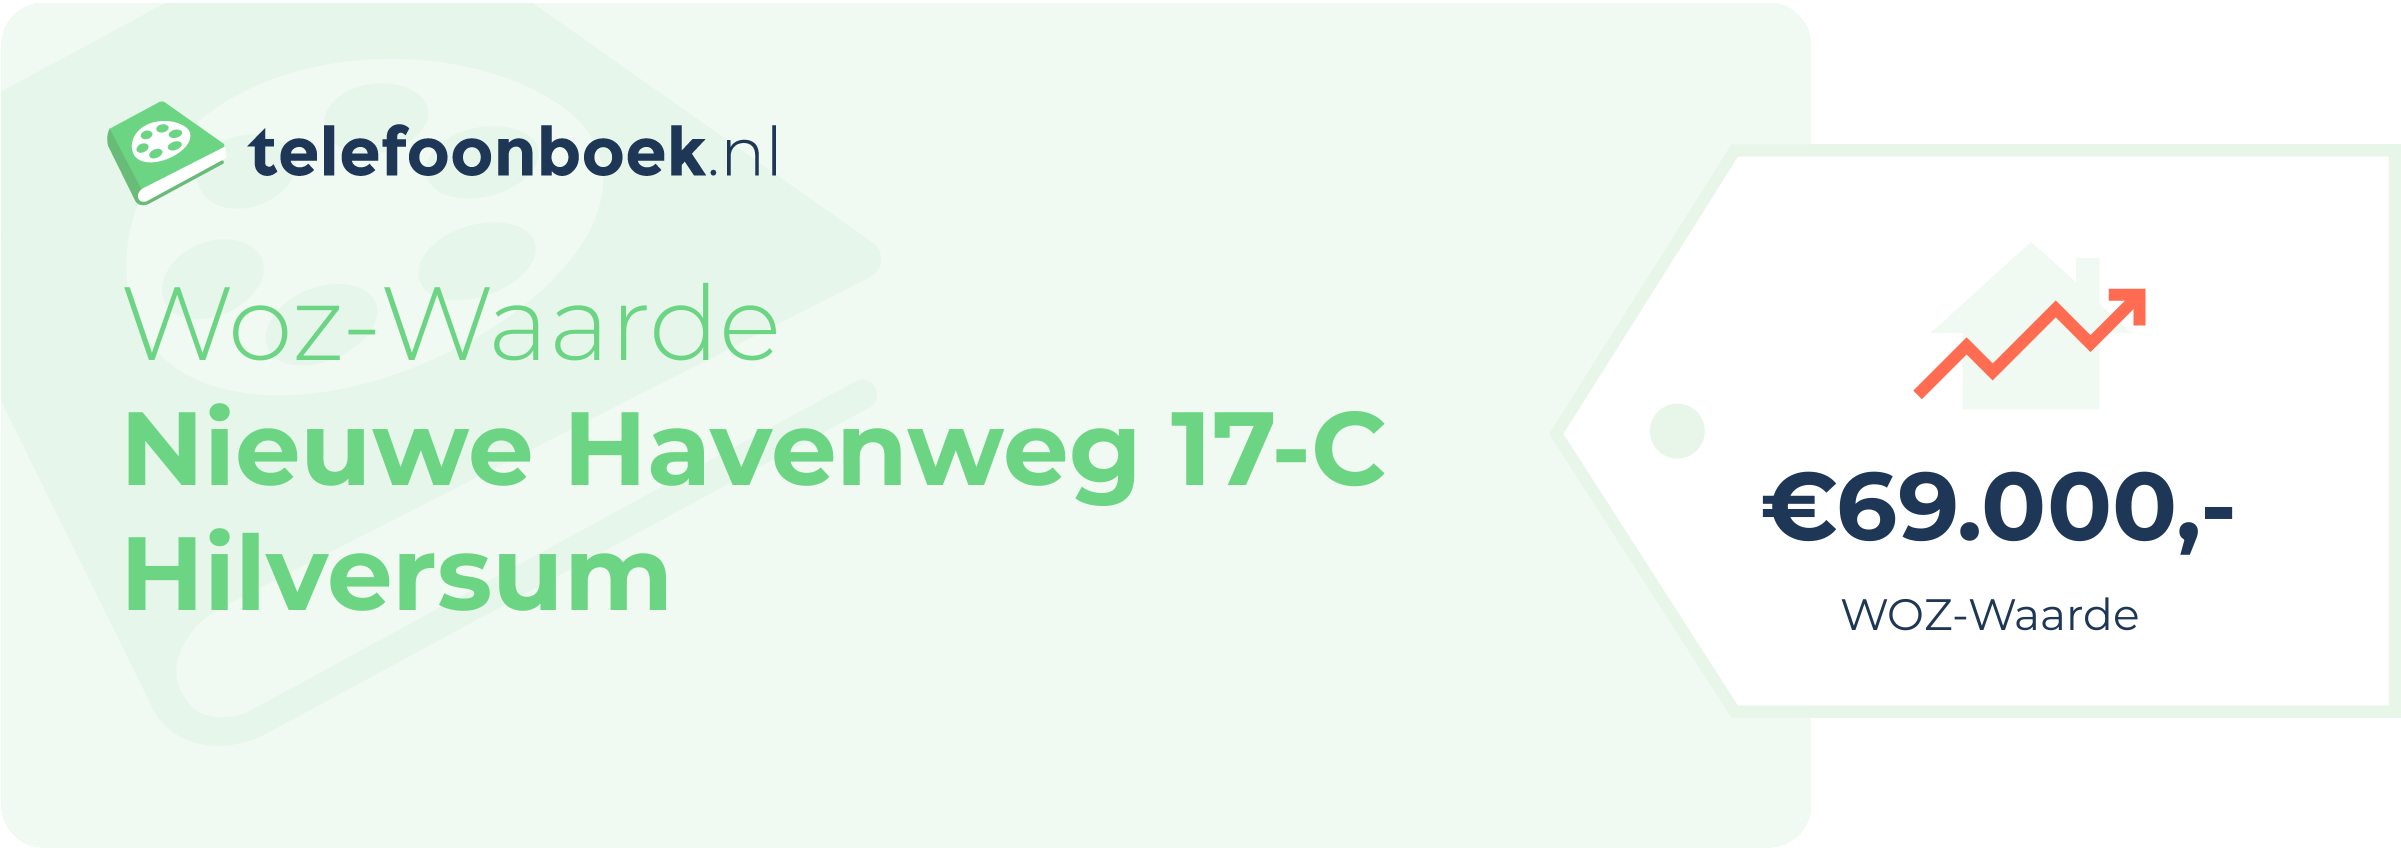 WOZ-waarde Nieuwe Havenweg 17-C Hilversum